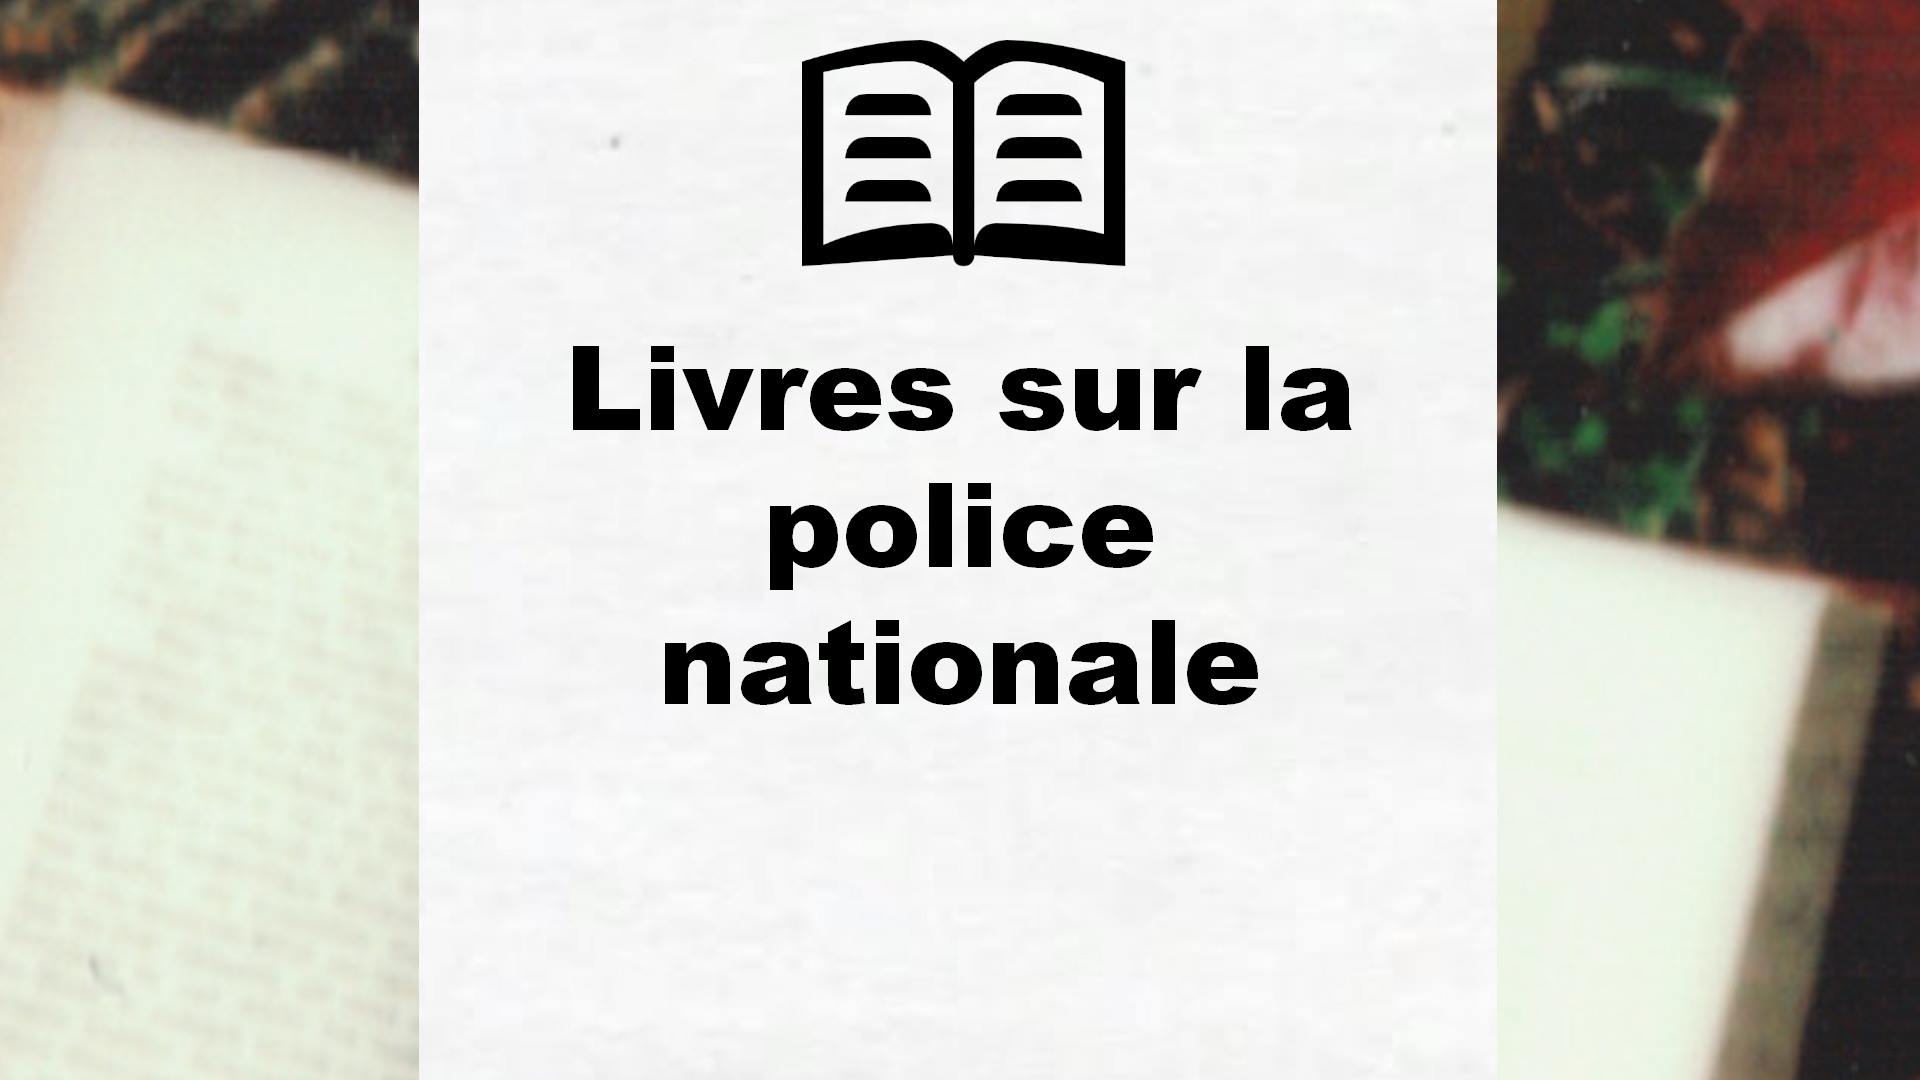 Livres sur la police nationale